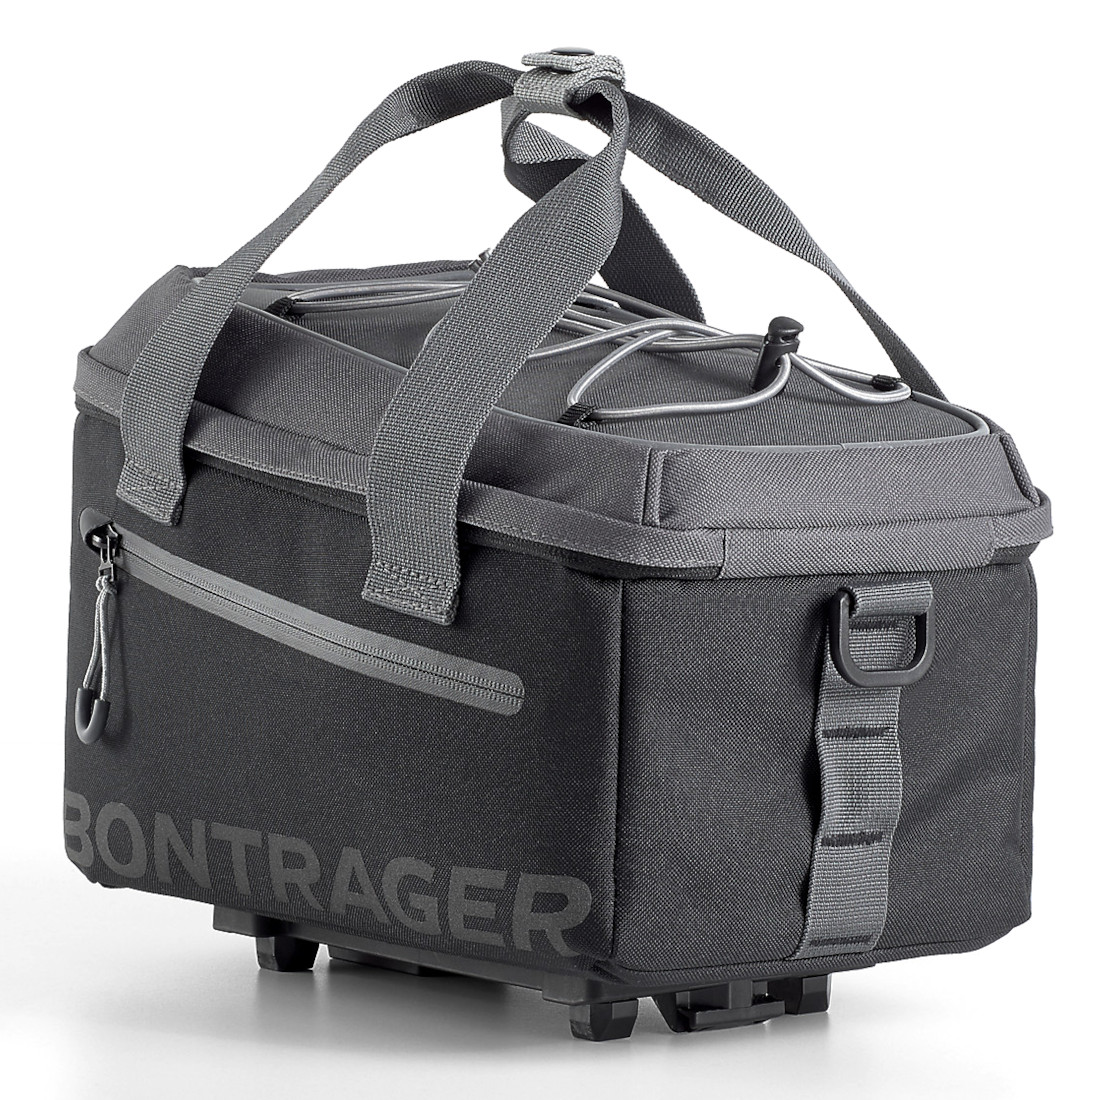 Produktbild von Bontrager MIK Commuter Gepäckträgertasche - 7L